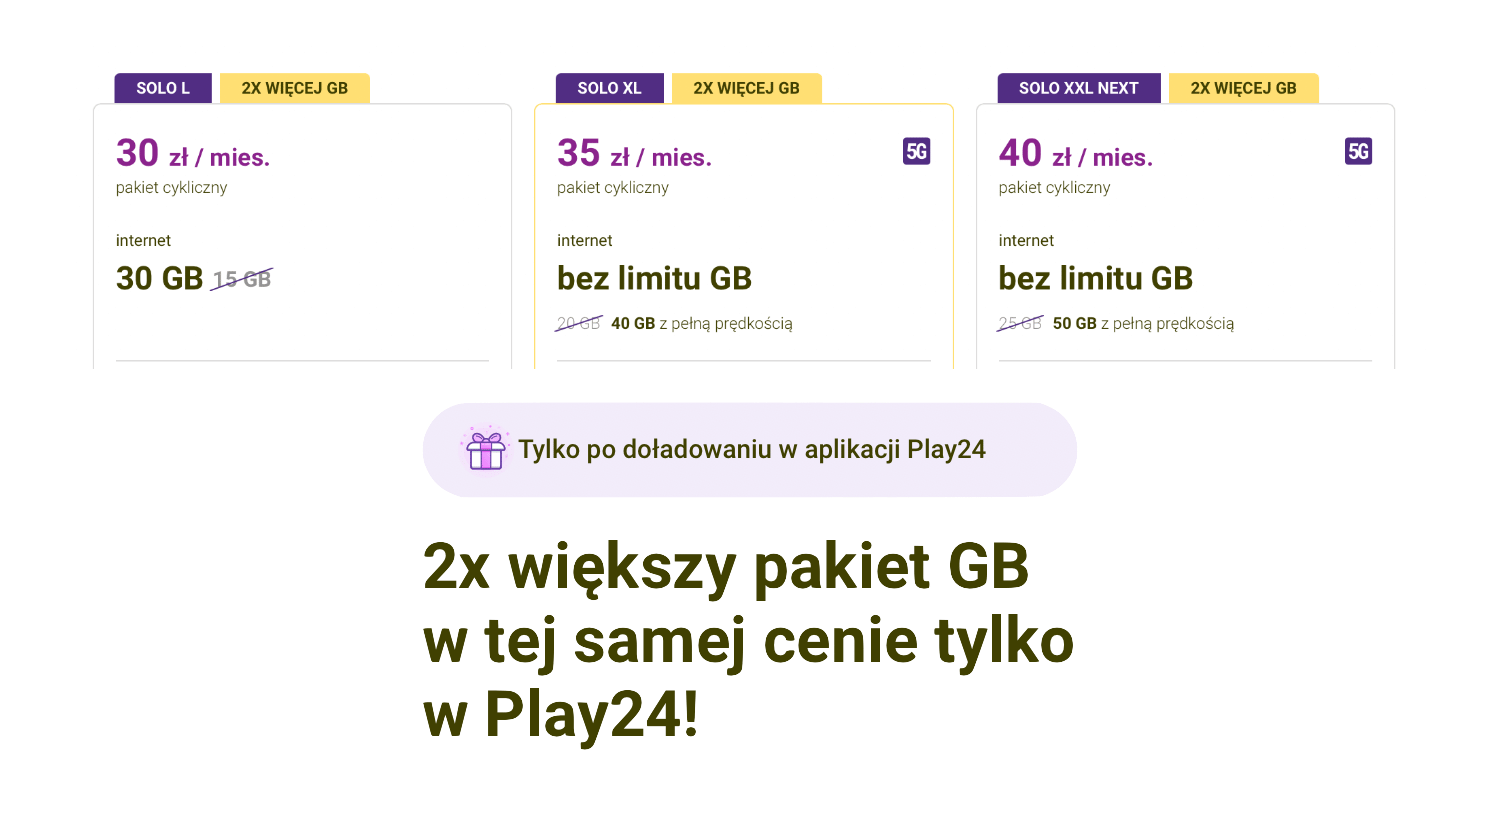 2x większy pakiet GB w tej samej cenie tylko w Play24